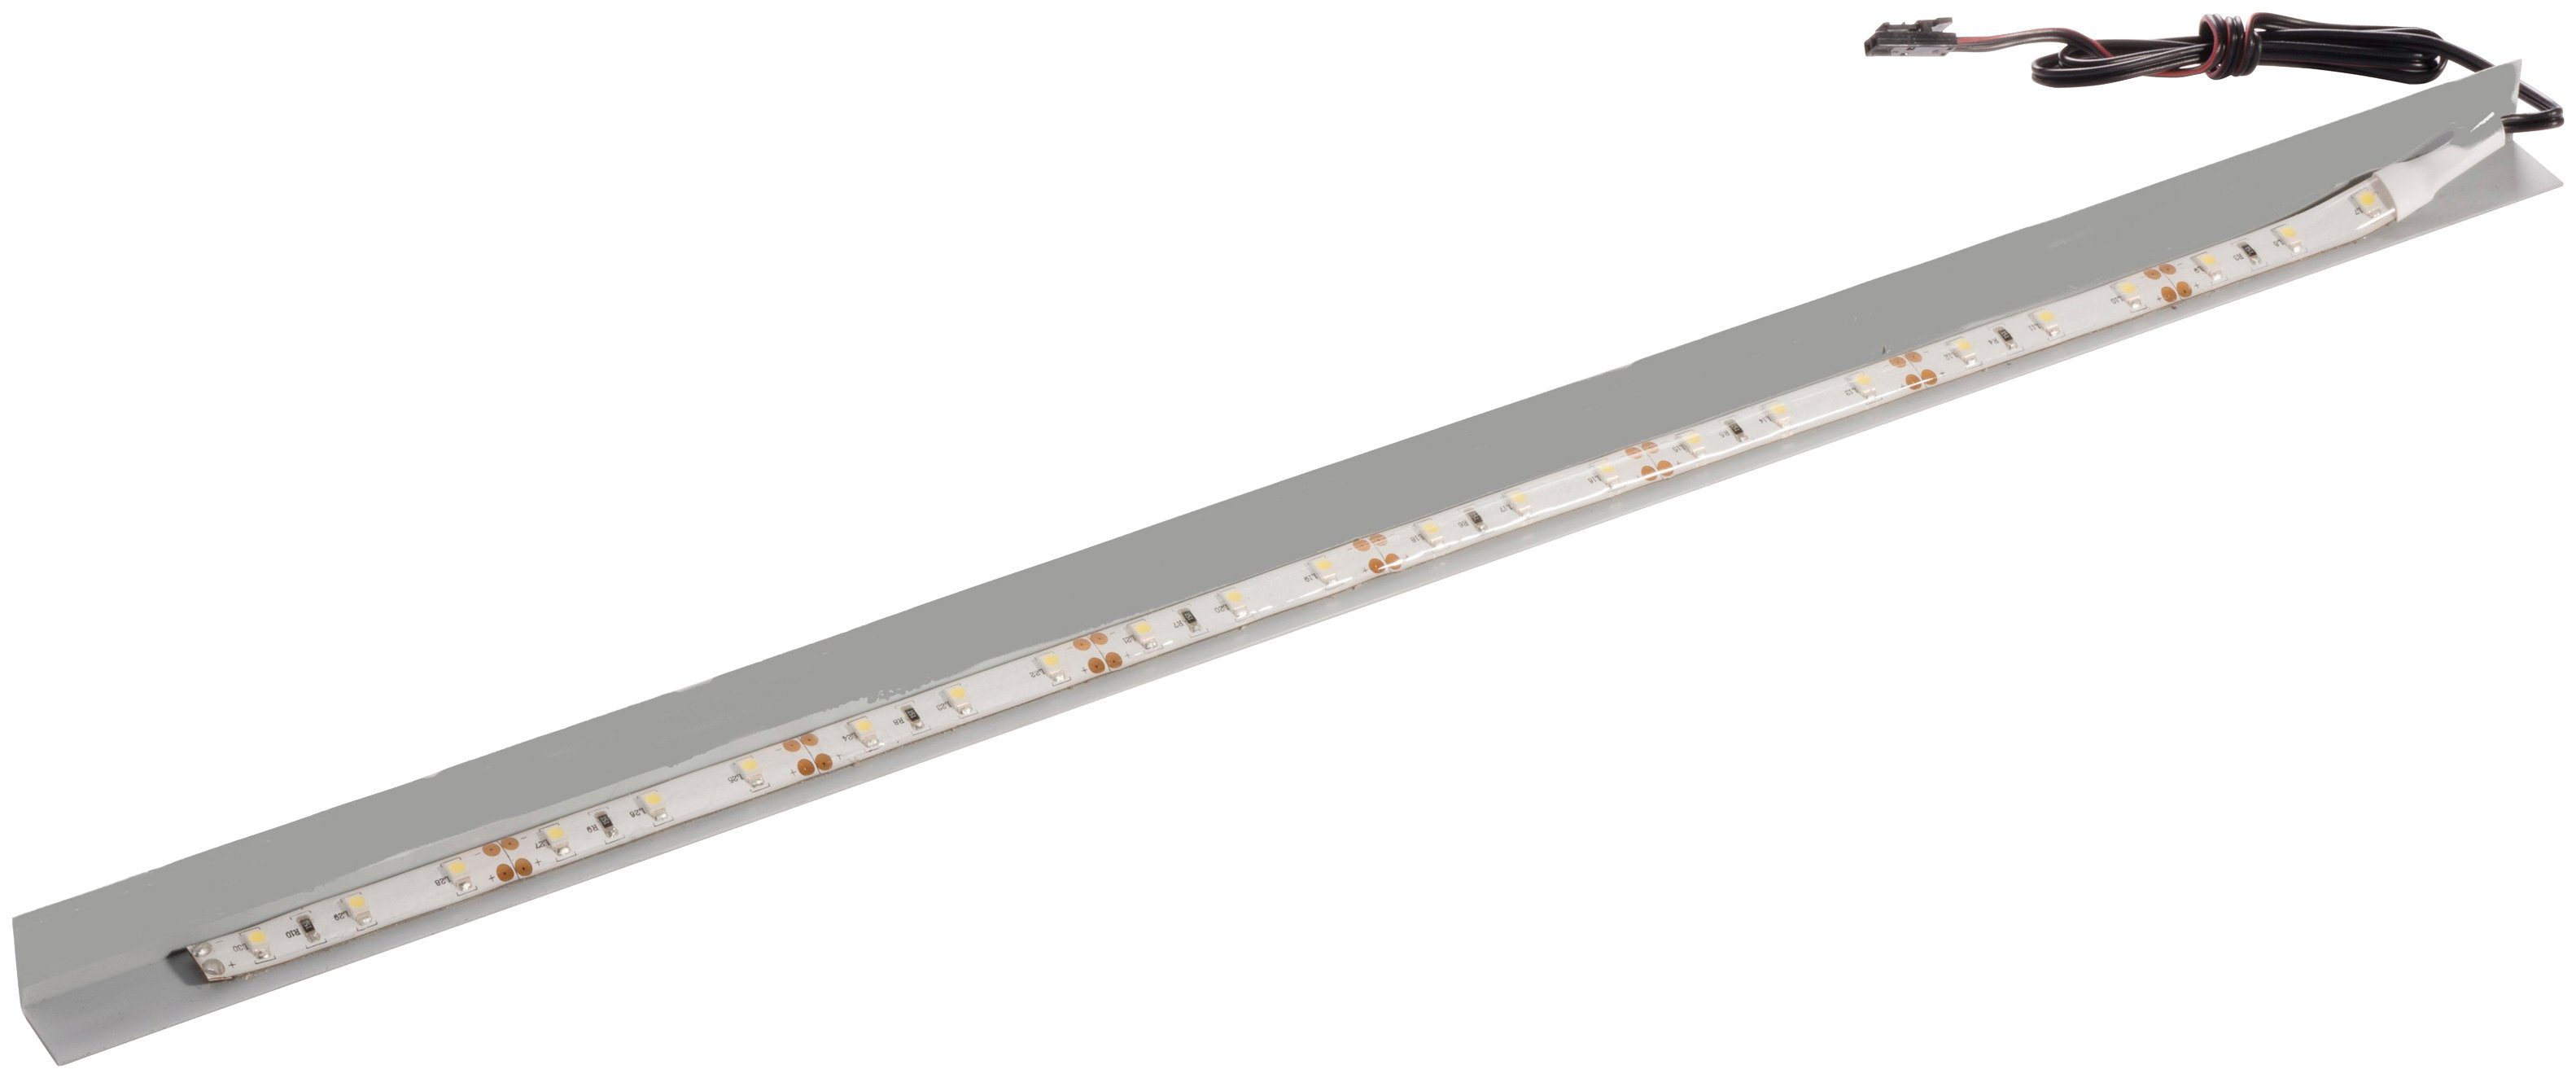 FACKELMANN LED Unterbauleuchte Oxford, LED wechselbar, Neutralweiß, passend  für Spiegelschrank 60cm breit